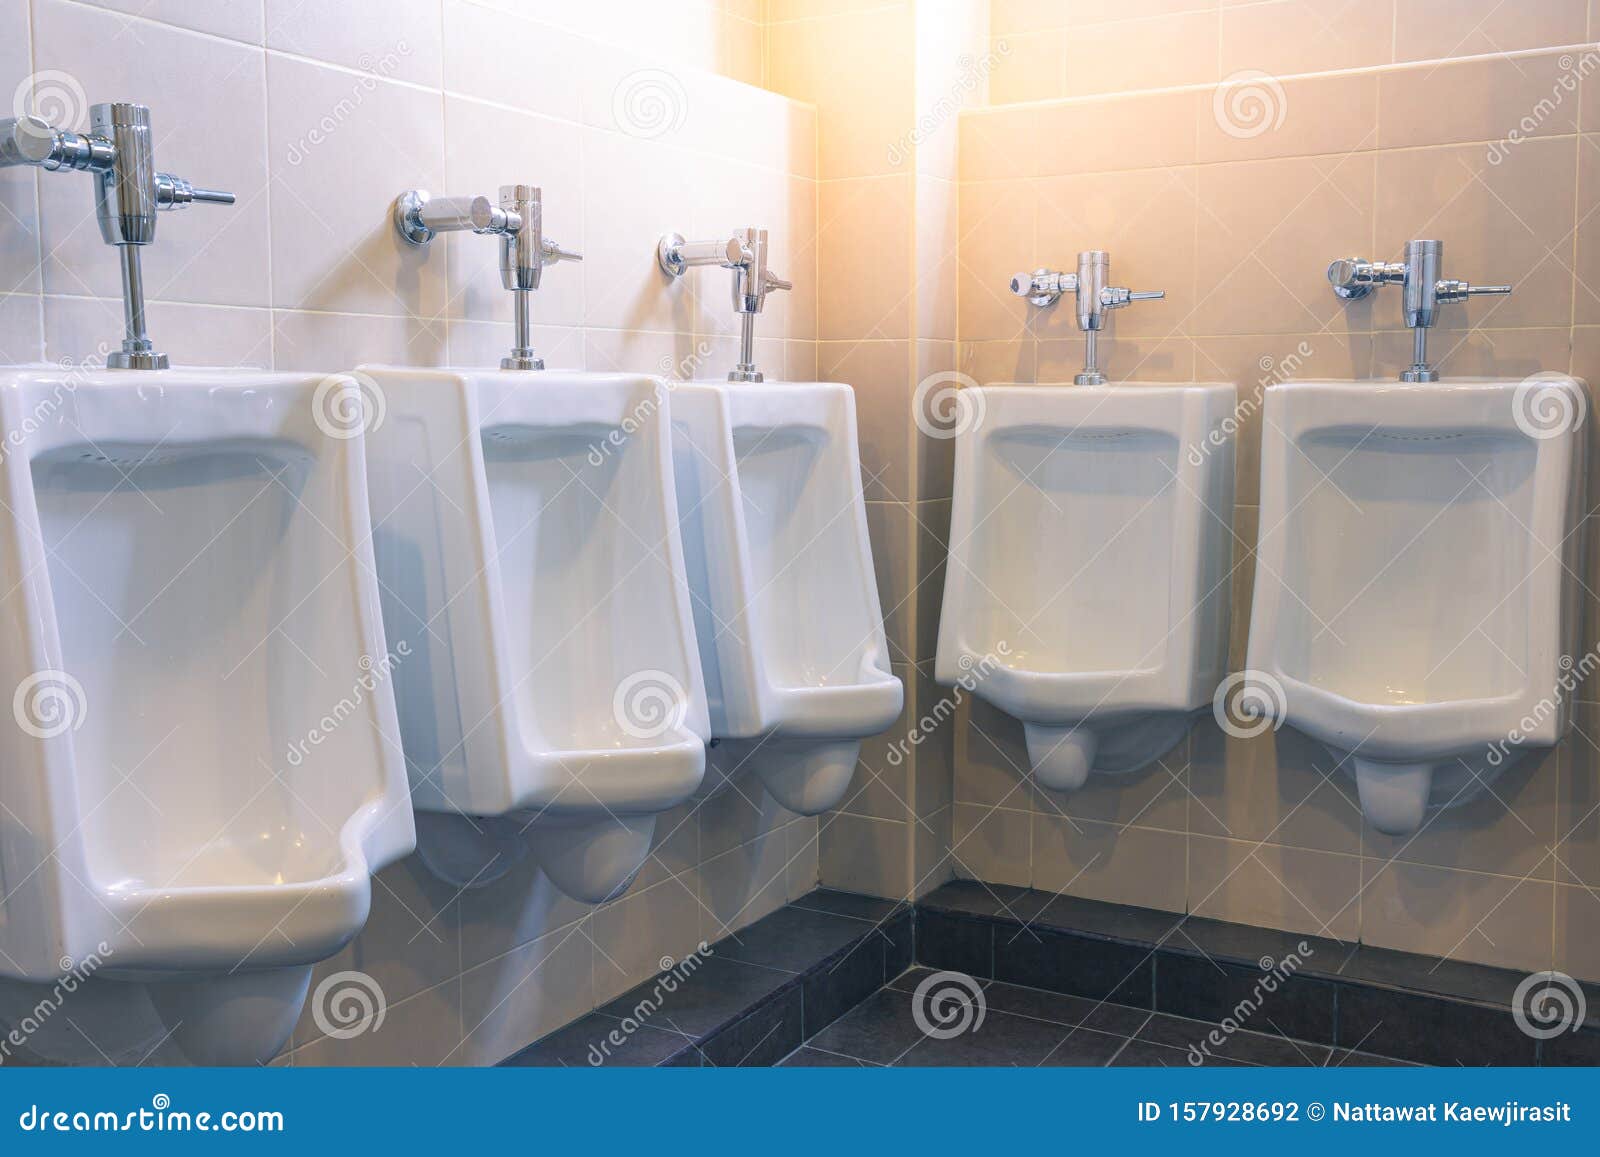 男人在厕所里小便照片摄影图片_ID:349516014-Veer图库